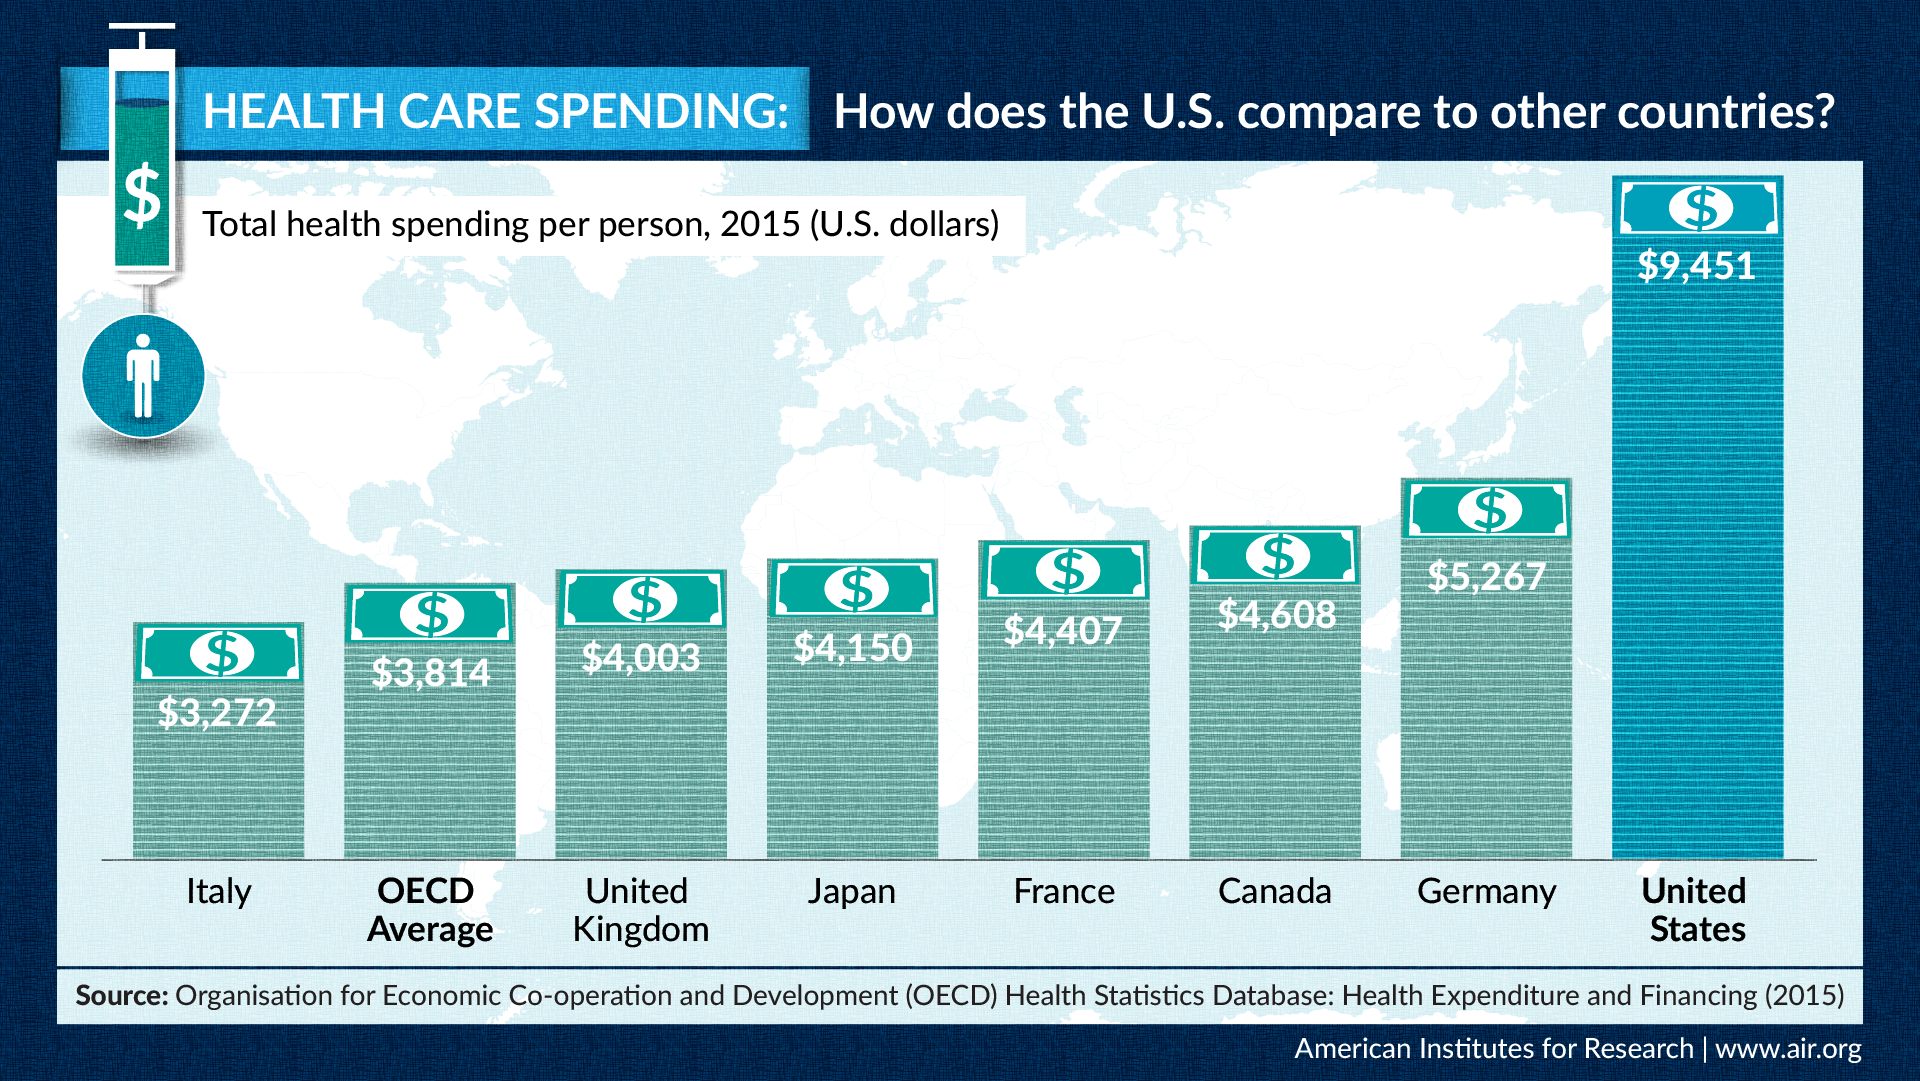 信息图：医疗保健支出：美国如何与其他国家进行比较？每人卫生总共支出，2015年（美国美元）意大利3272经合组织平均3814英国4003日本4150法国4407加拿大4608德国5267美国9451